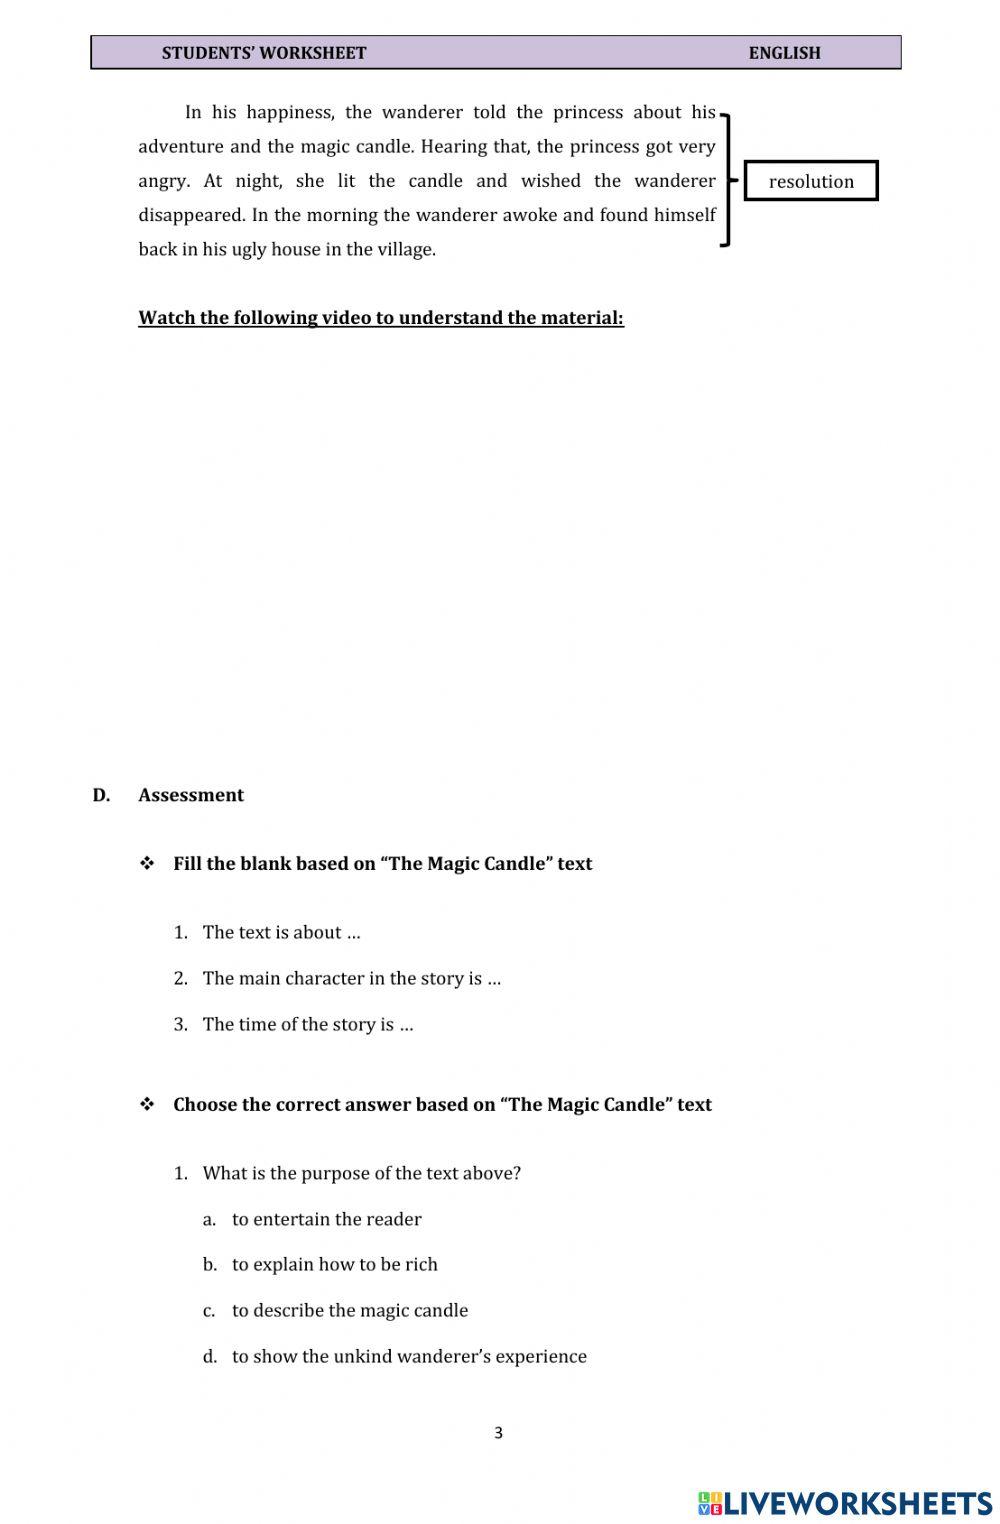 Student's Worksheet (Narrative Text 1)